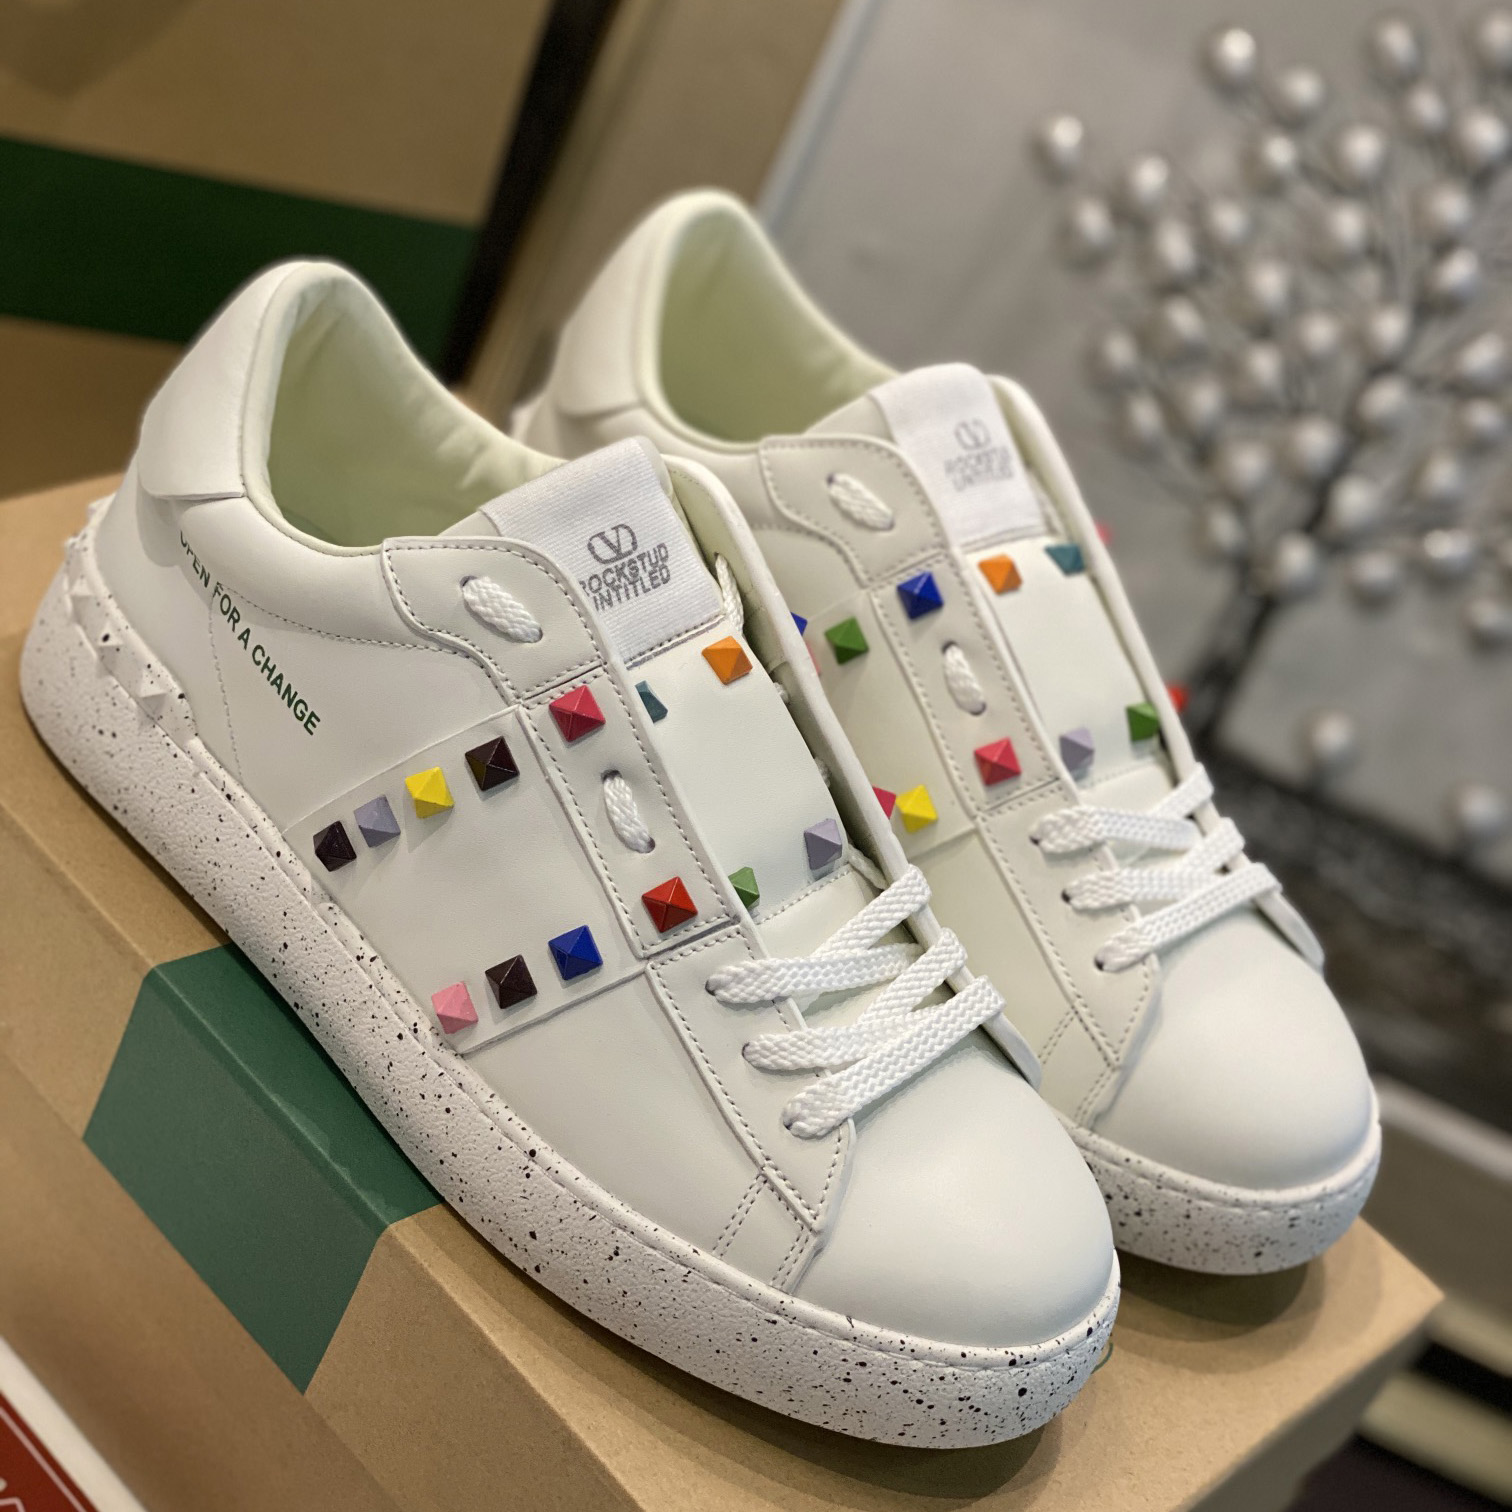 Valenti  Open For A Change Sneaker In Bio-Based Material In White/Multicolor - PerfectKickZ